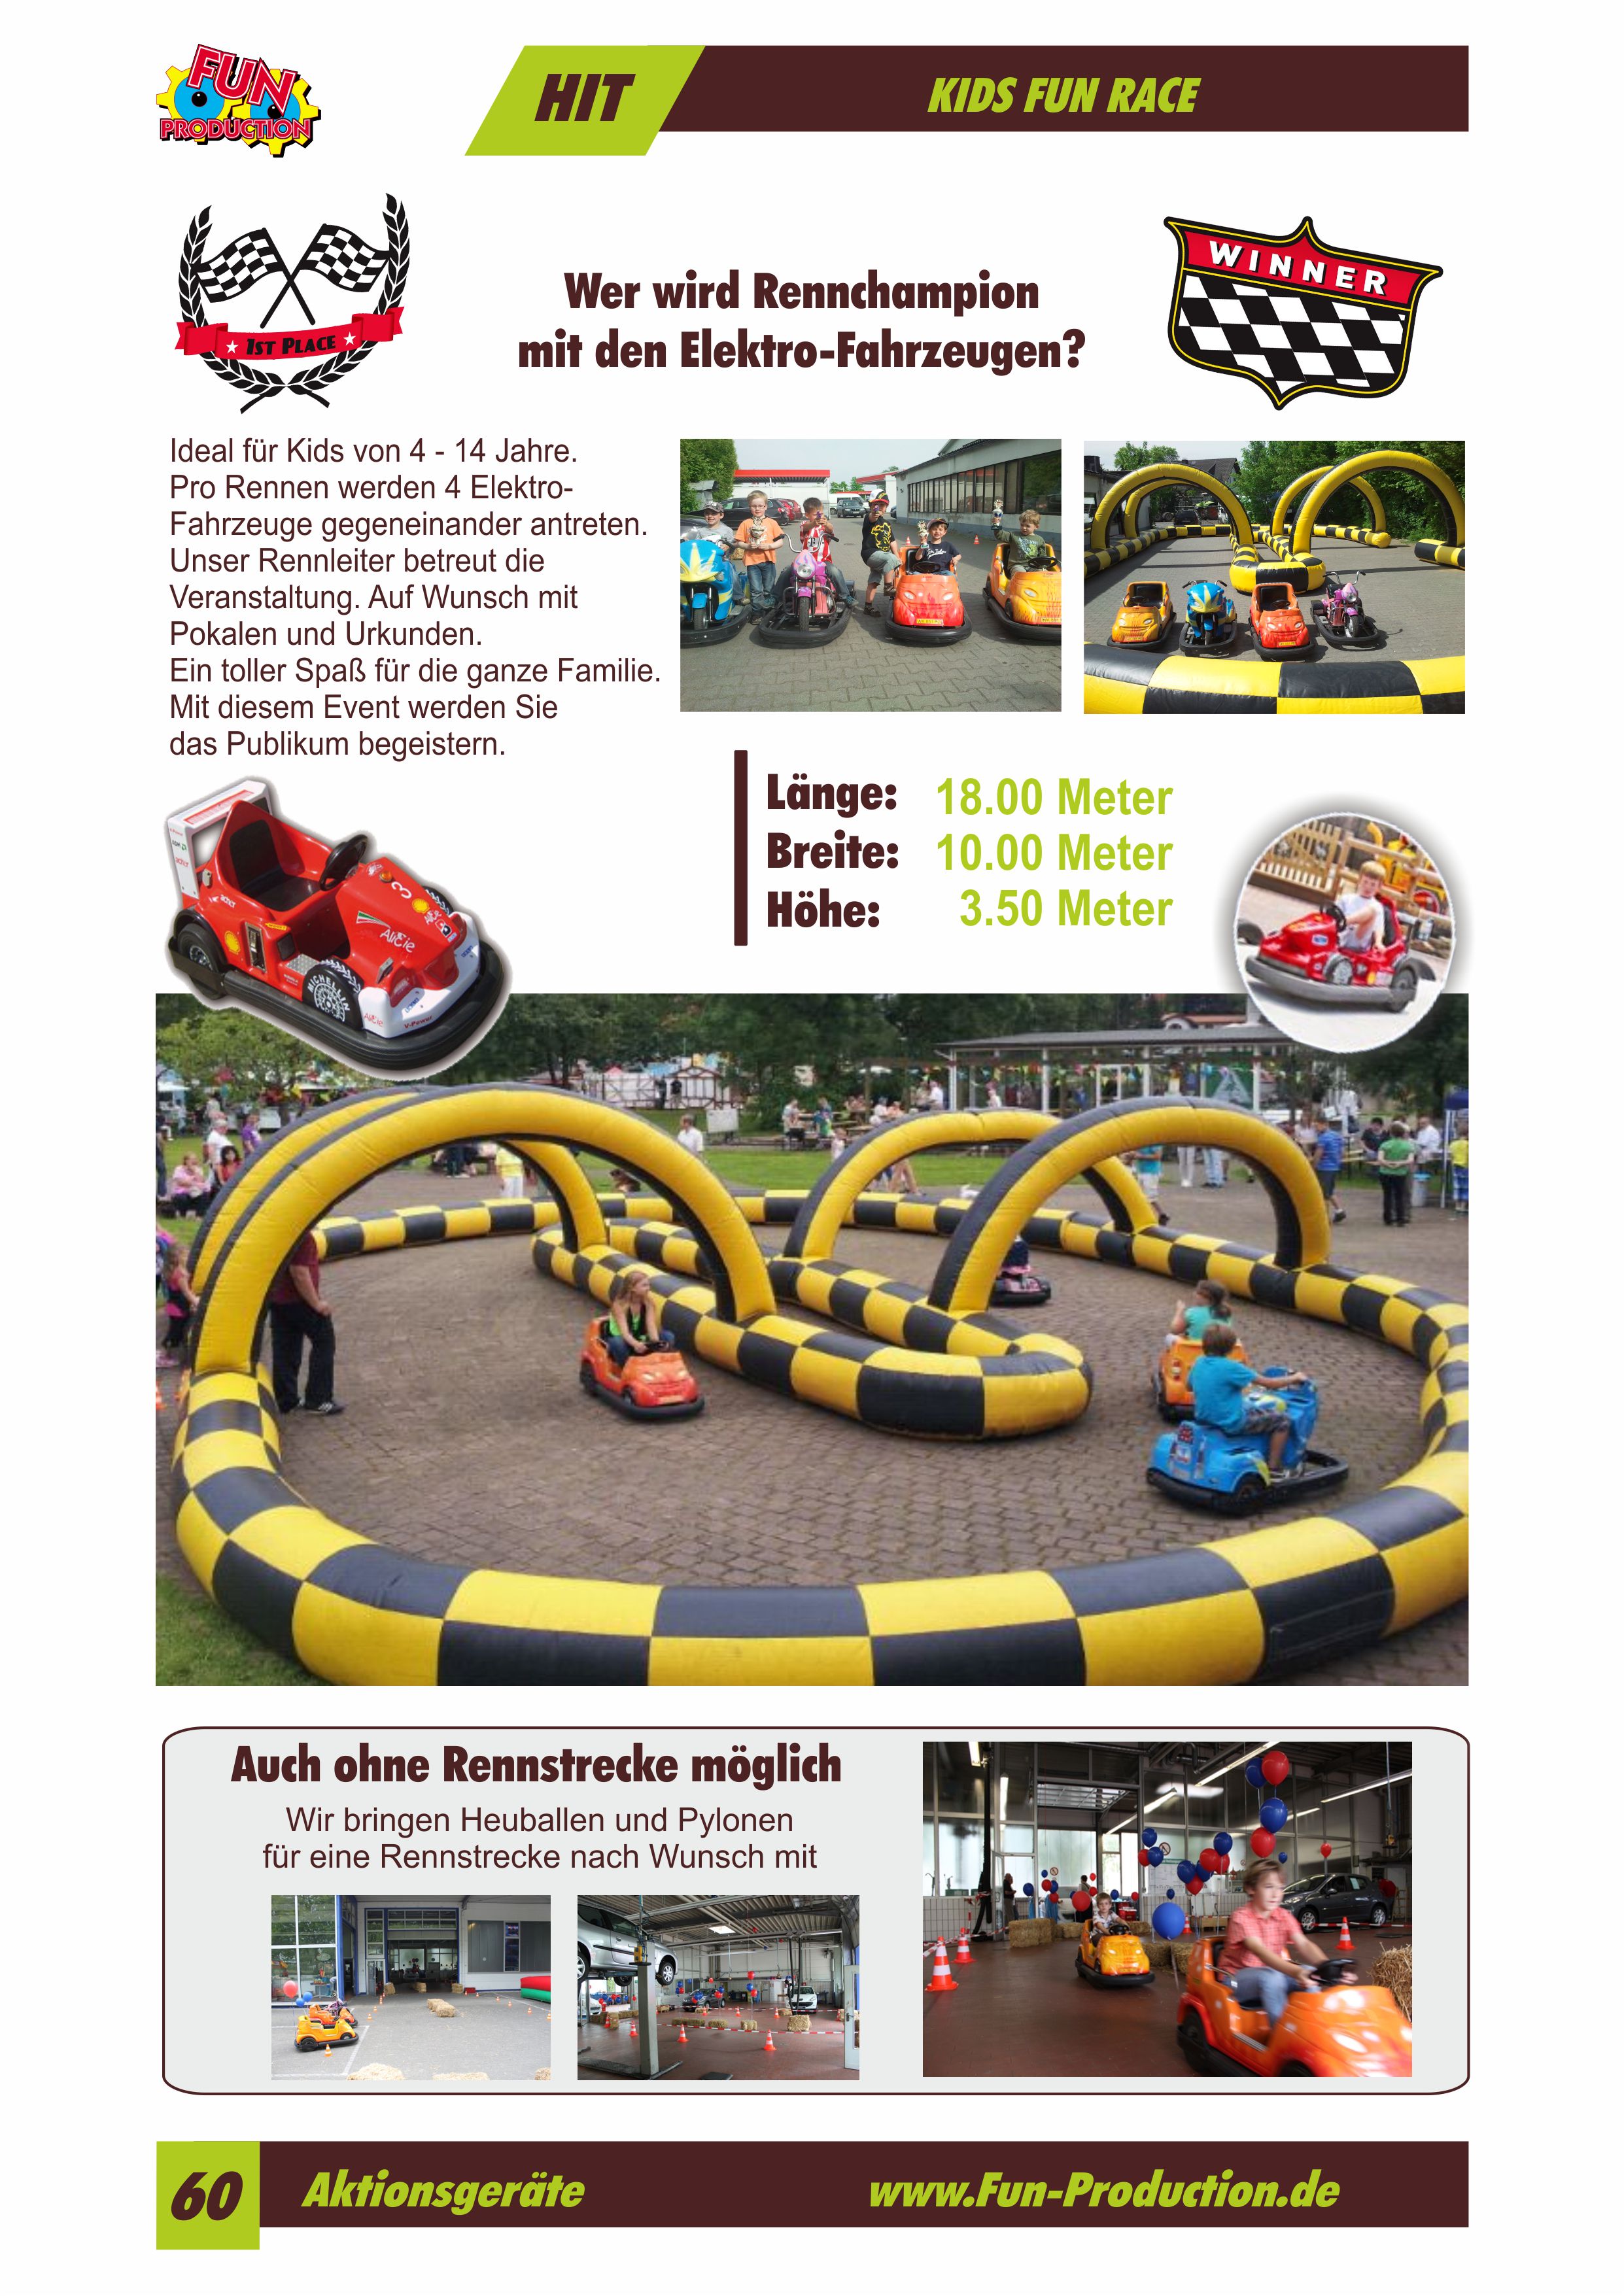 Kids Fun Race Fun Production GmbH